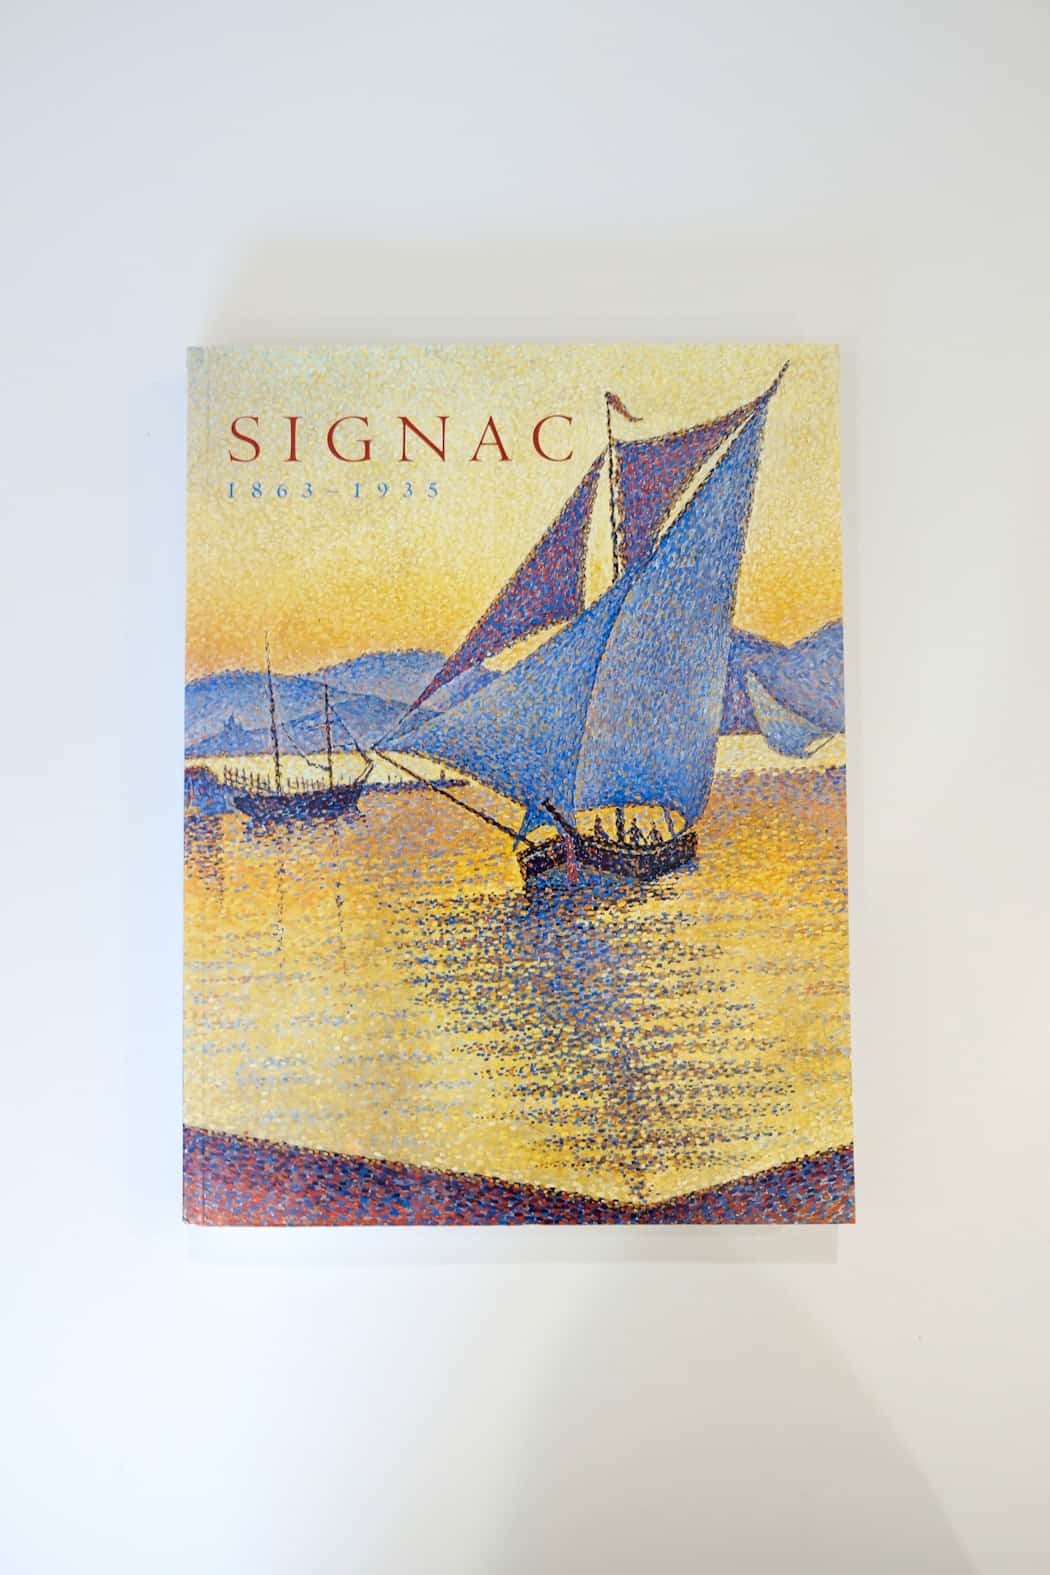 Signac 1863-1935 by Paul Signac